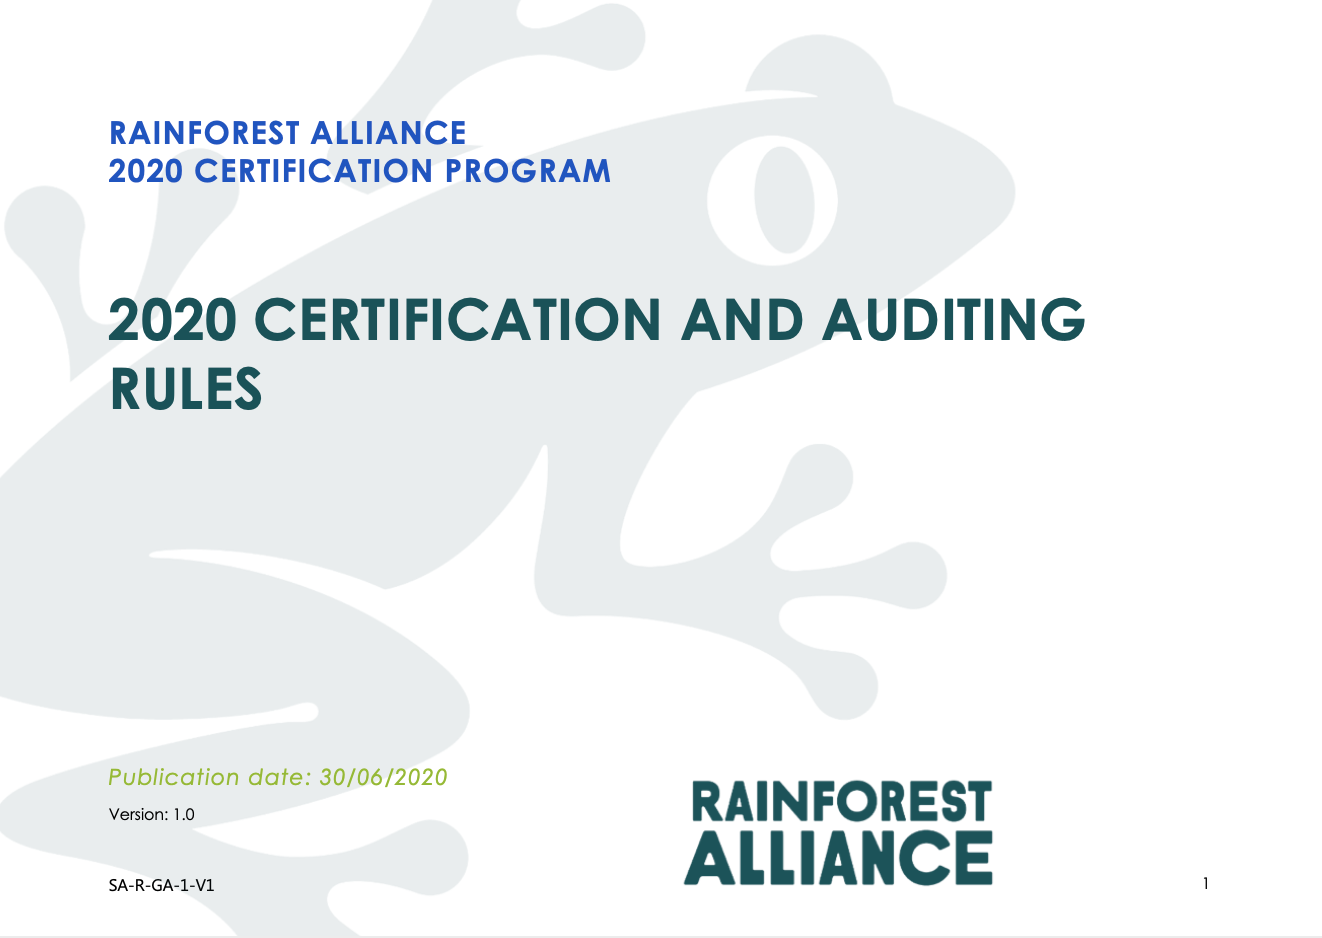 Quy định chứng nhận và thanh tra đánh giá Rainforest Alliance 2020